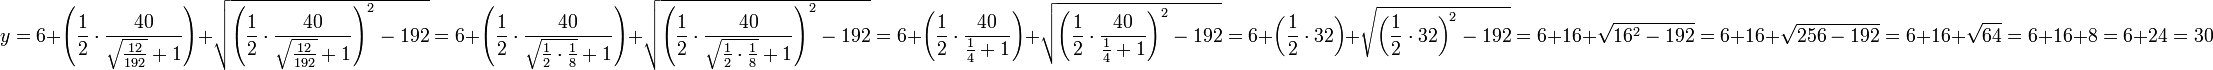 y=6+\left(\frac{1}{2}\sdot\frac{40}{\sqrt{\frac{12}{192}}+1}\right)+\sqrt{\left(\frac{1}{2}\sdot\frac{40}{\sqrt{\frac{12}{192}}+1}\right)^2-192}=6+\left(\frac{1}{2}\sdot\frac{40}{\sqrt{\frac{1}{2}\sdot\frac{1}{8}}+1}\right)+\sqrt{\left(\frac{1}{2}\sdot\frac{40}{\sqrt{\frac{1}{2}\sdot\frac{1}{8}}+1}\right)^2-192}=6+\left(\frac{1}{2}\sdot\frac{40}{\frac{1}{4}+1}\right)+\sqrt{\left(\frac{1}{2}\sdot\frac{40}{\frac{1}{4}+1}\right)^2-192}=6+\left(\frac{1}{2}\sdot32\right)+\sqrt{\left(\frac{1}{2}\sdot32\right)^2-192}=6+16+\sqrt{16^2-192}=6+16+\sqrt{256-192}=6+16+\sqrt{64}=6+16+8=6+24=30